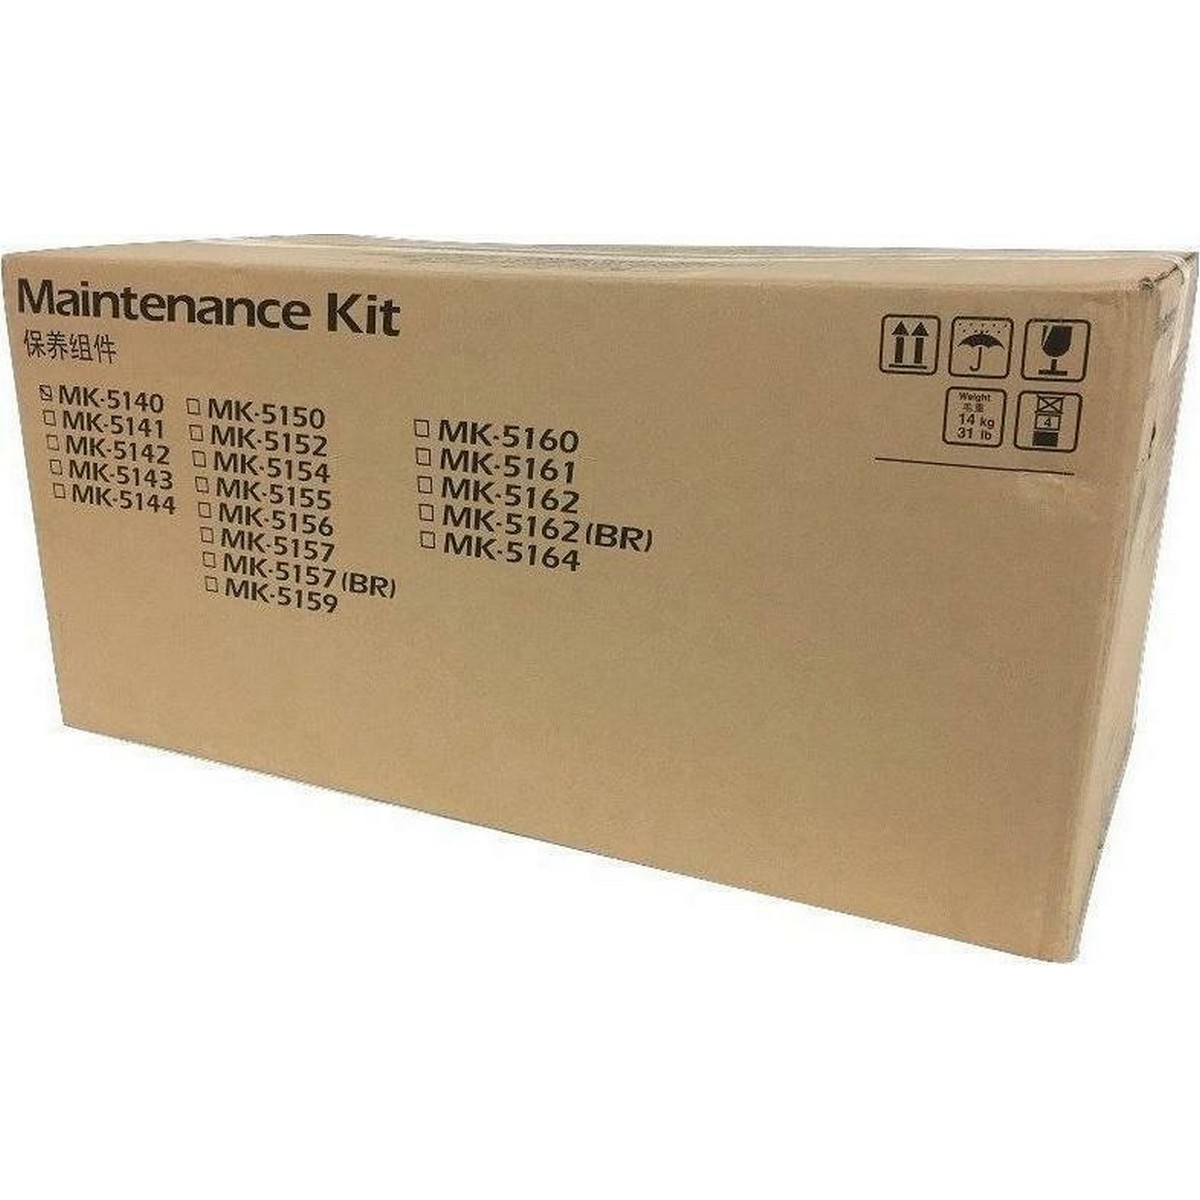 Maintenance Kit Laser Kyocera Mita MK-5150 200K